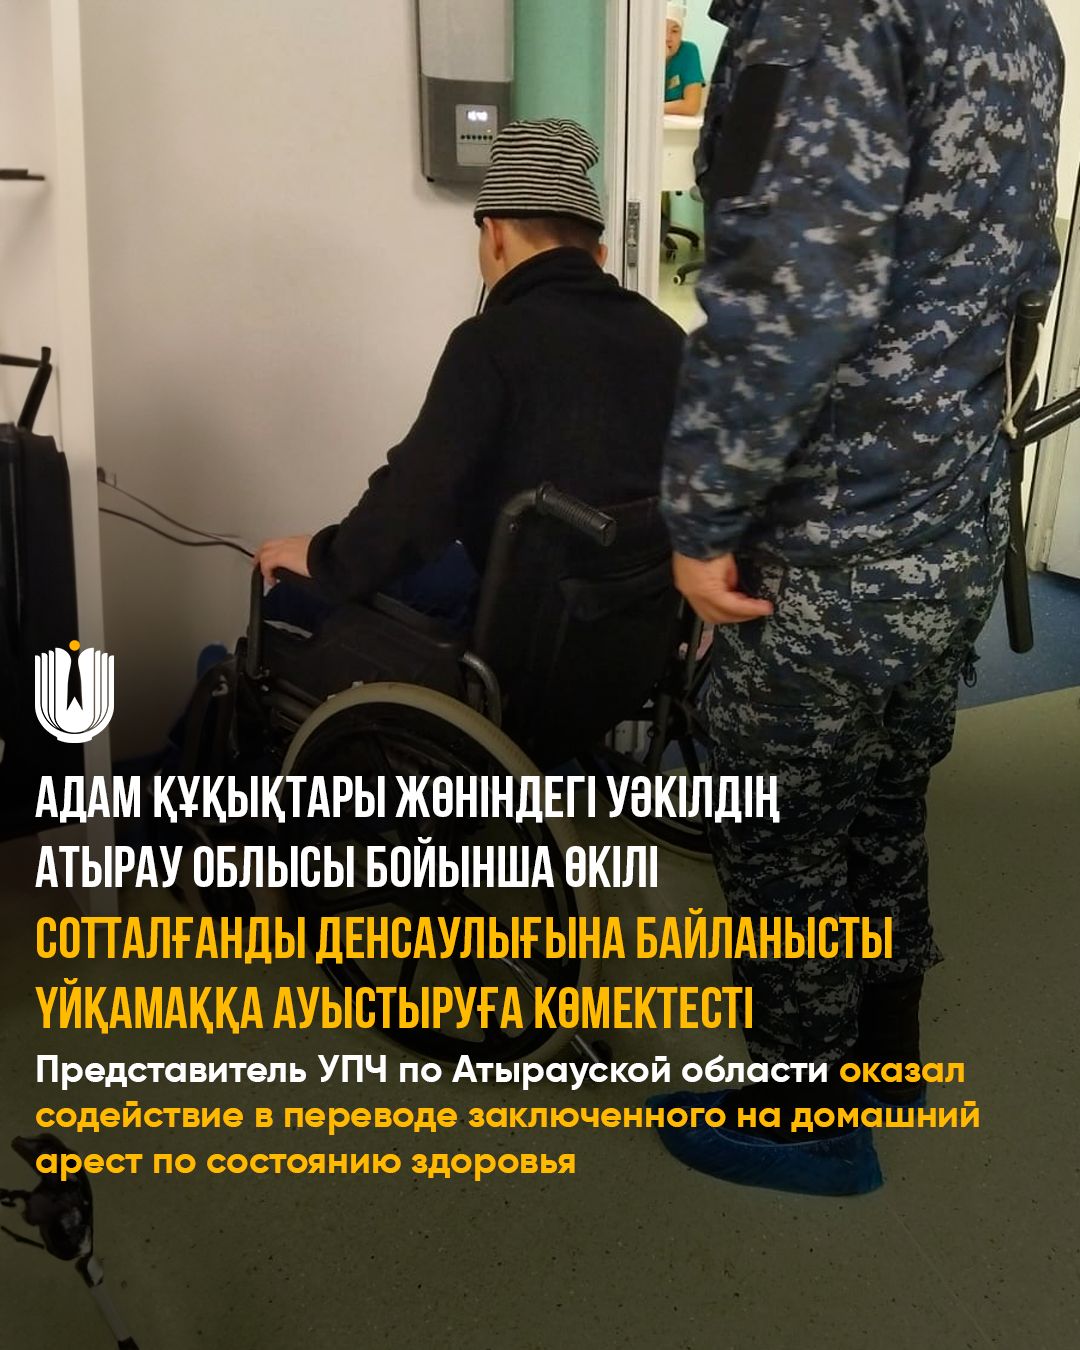 Представитель УПЧ по Атырауской области оказал содействие в переводе заключенного на домашний арест по состоянию здоровья